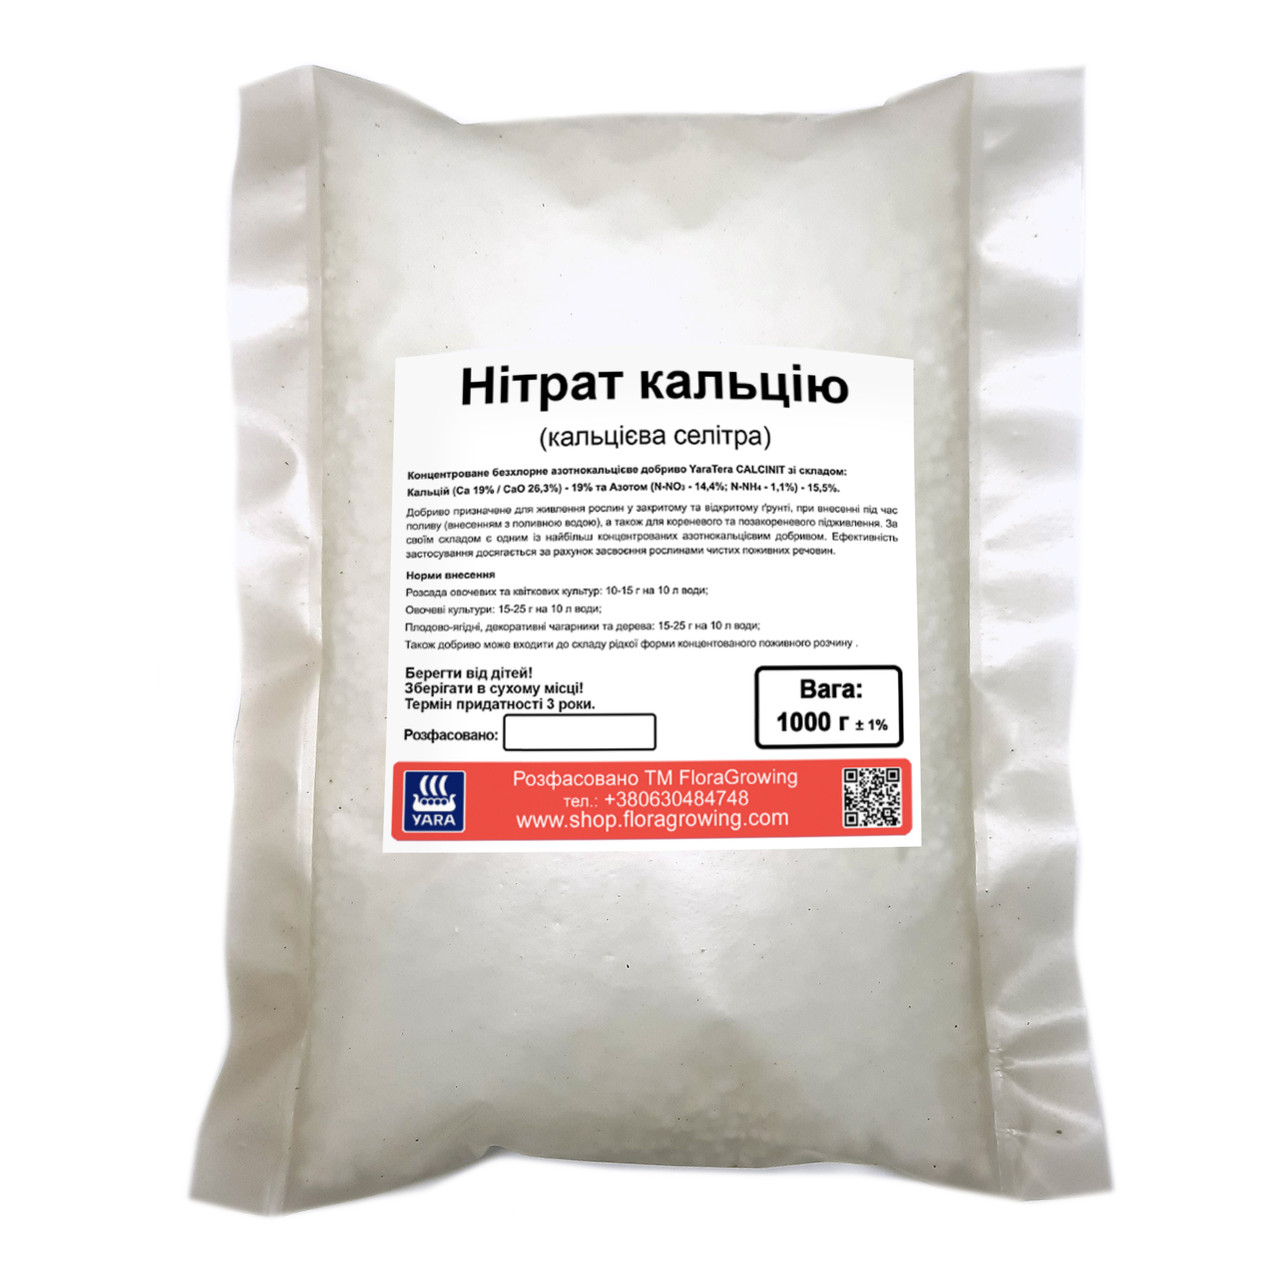 1 кг Нітрат кальцію (Кальцієва селітра) - ЯраТера Кальциніт